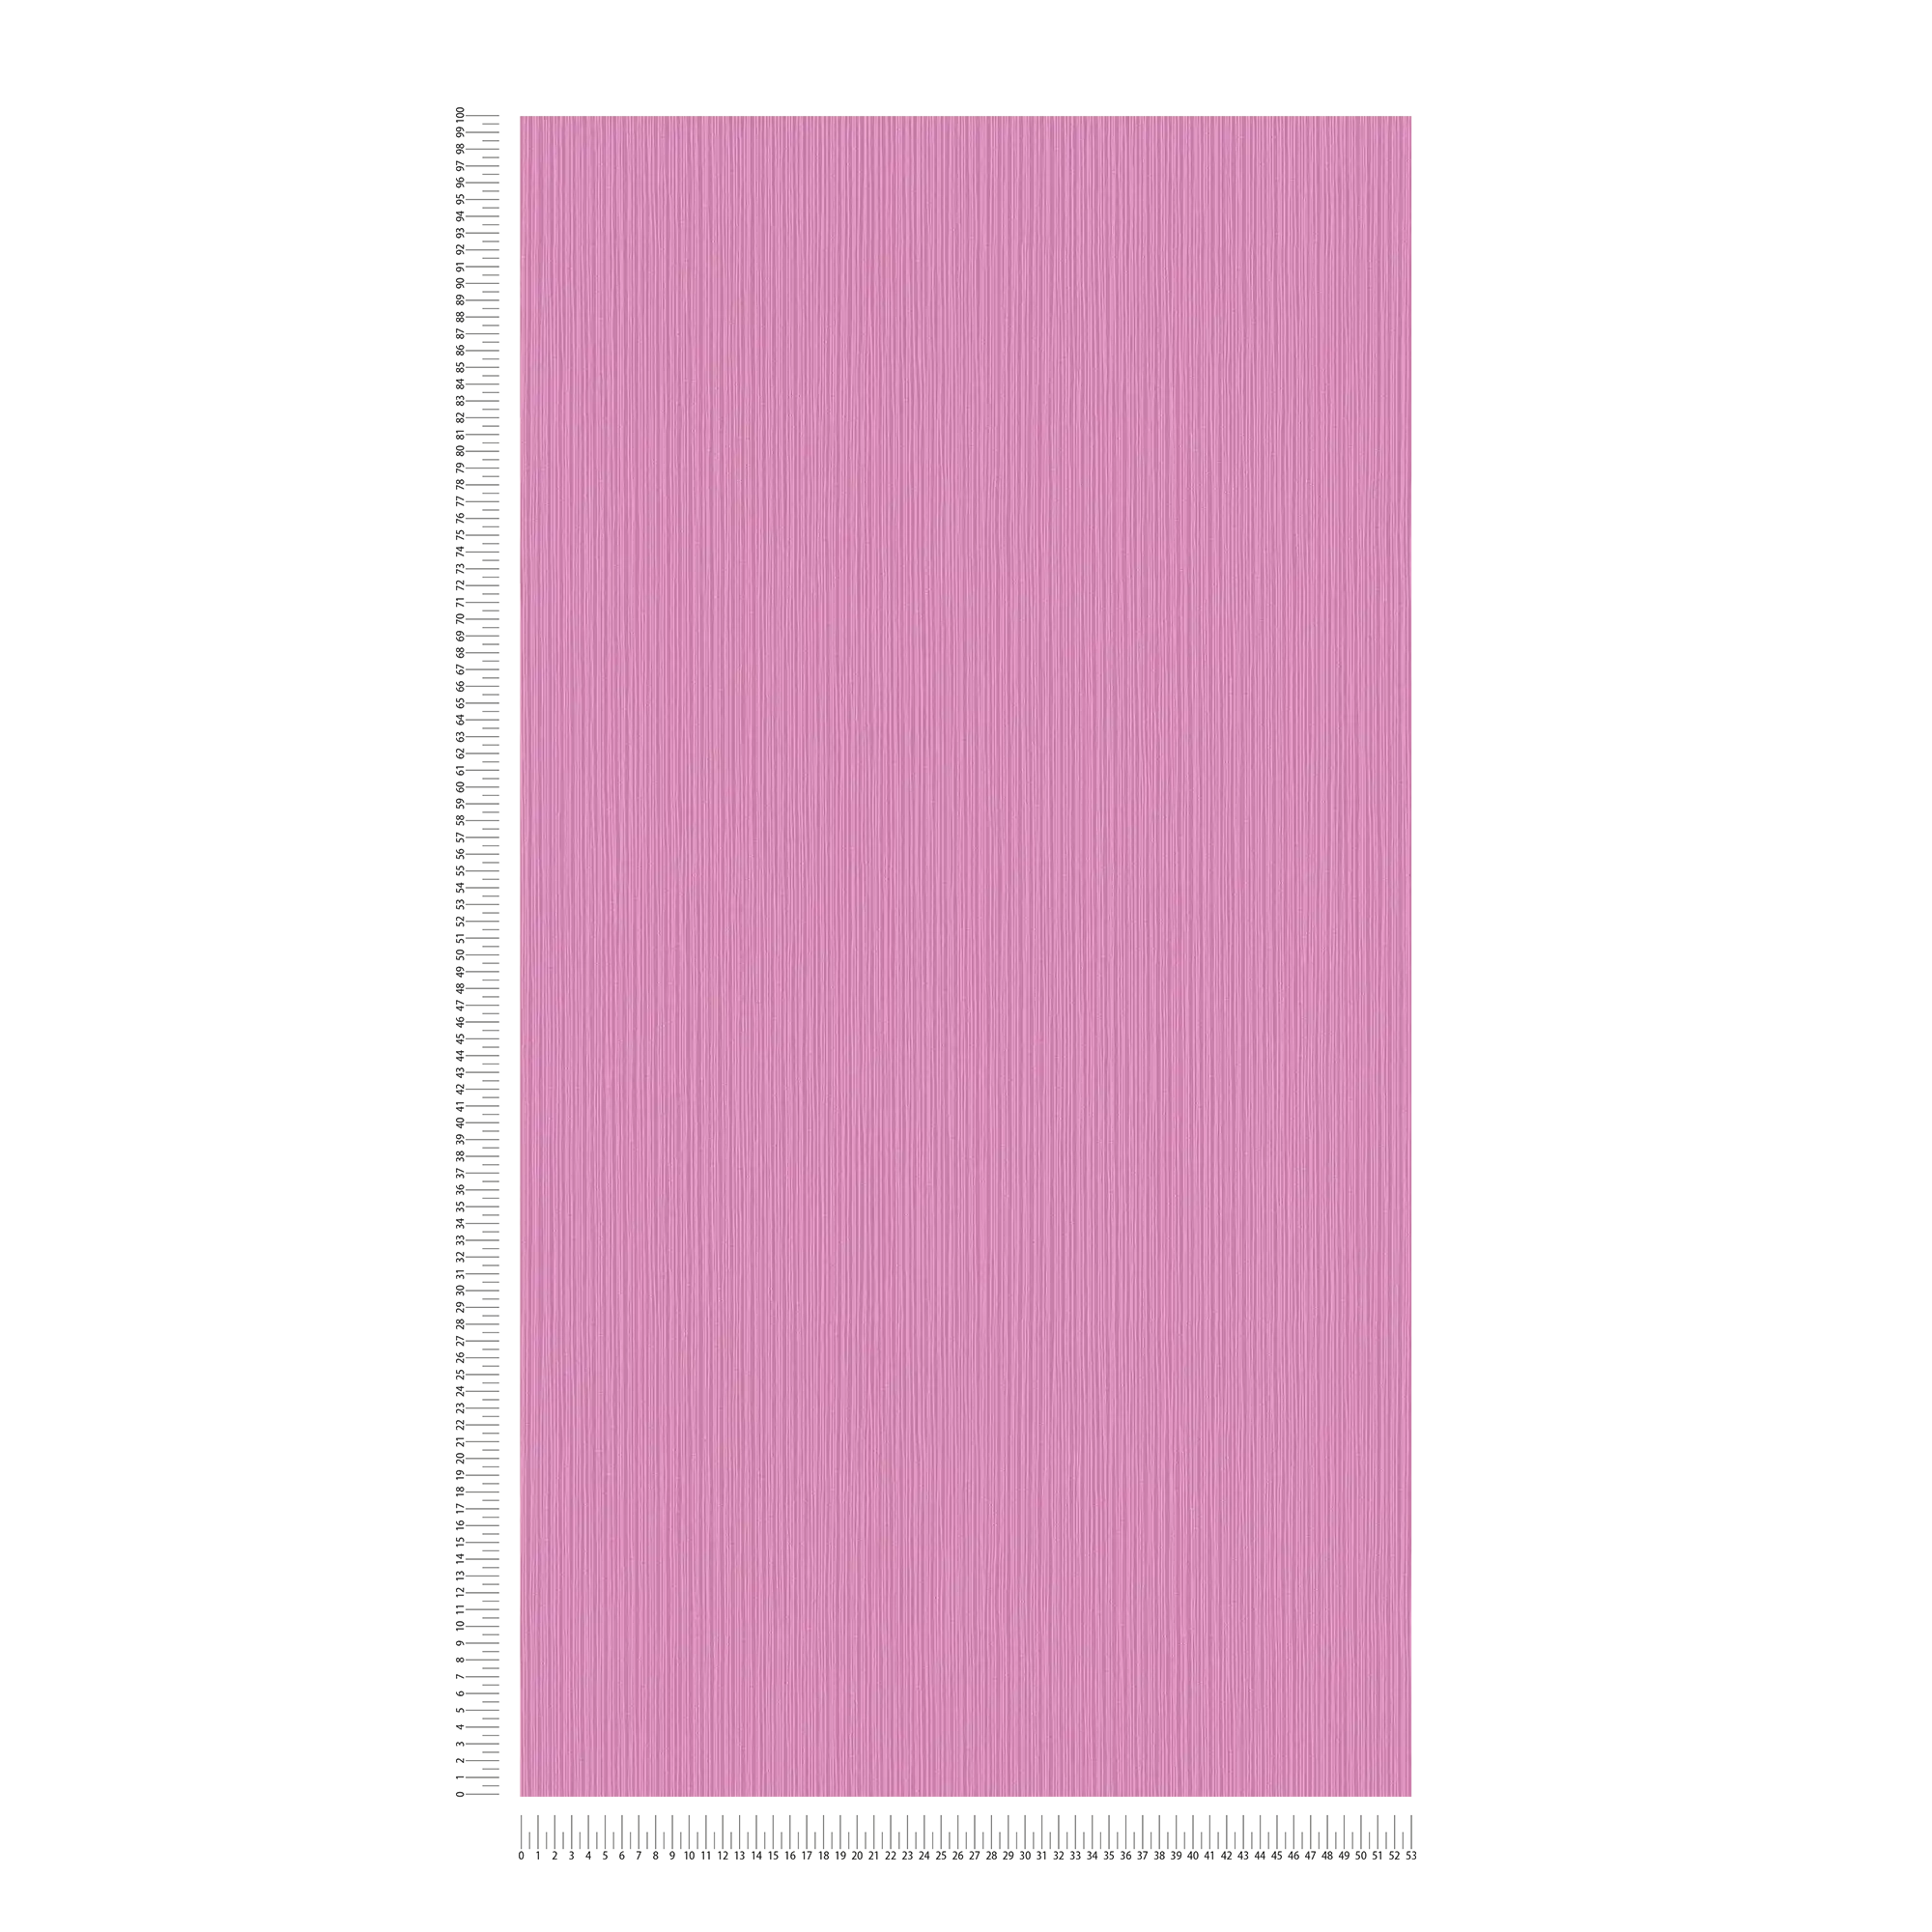             Tapete Violett mit Linienmuster & Strukturdesign
        